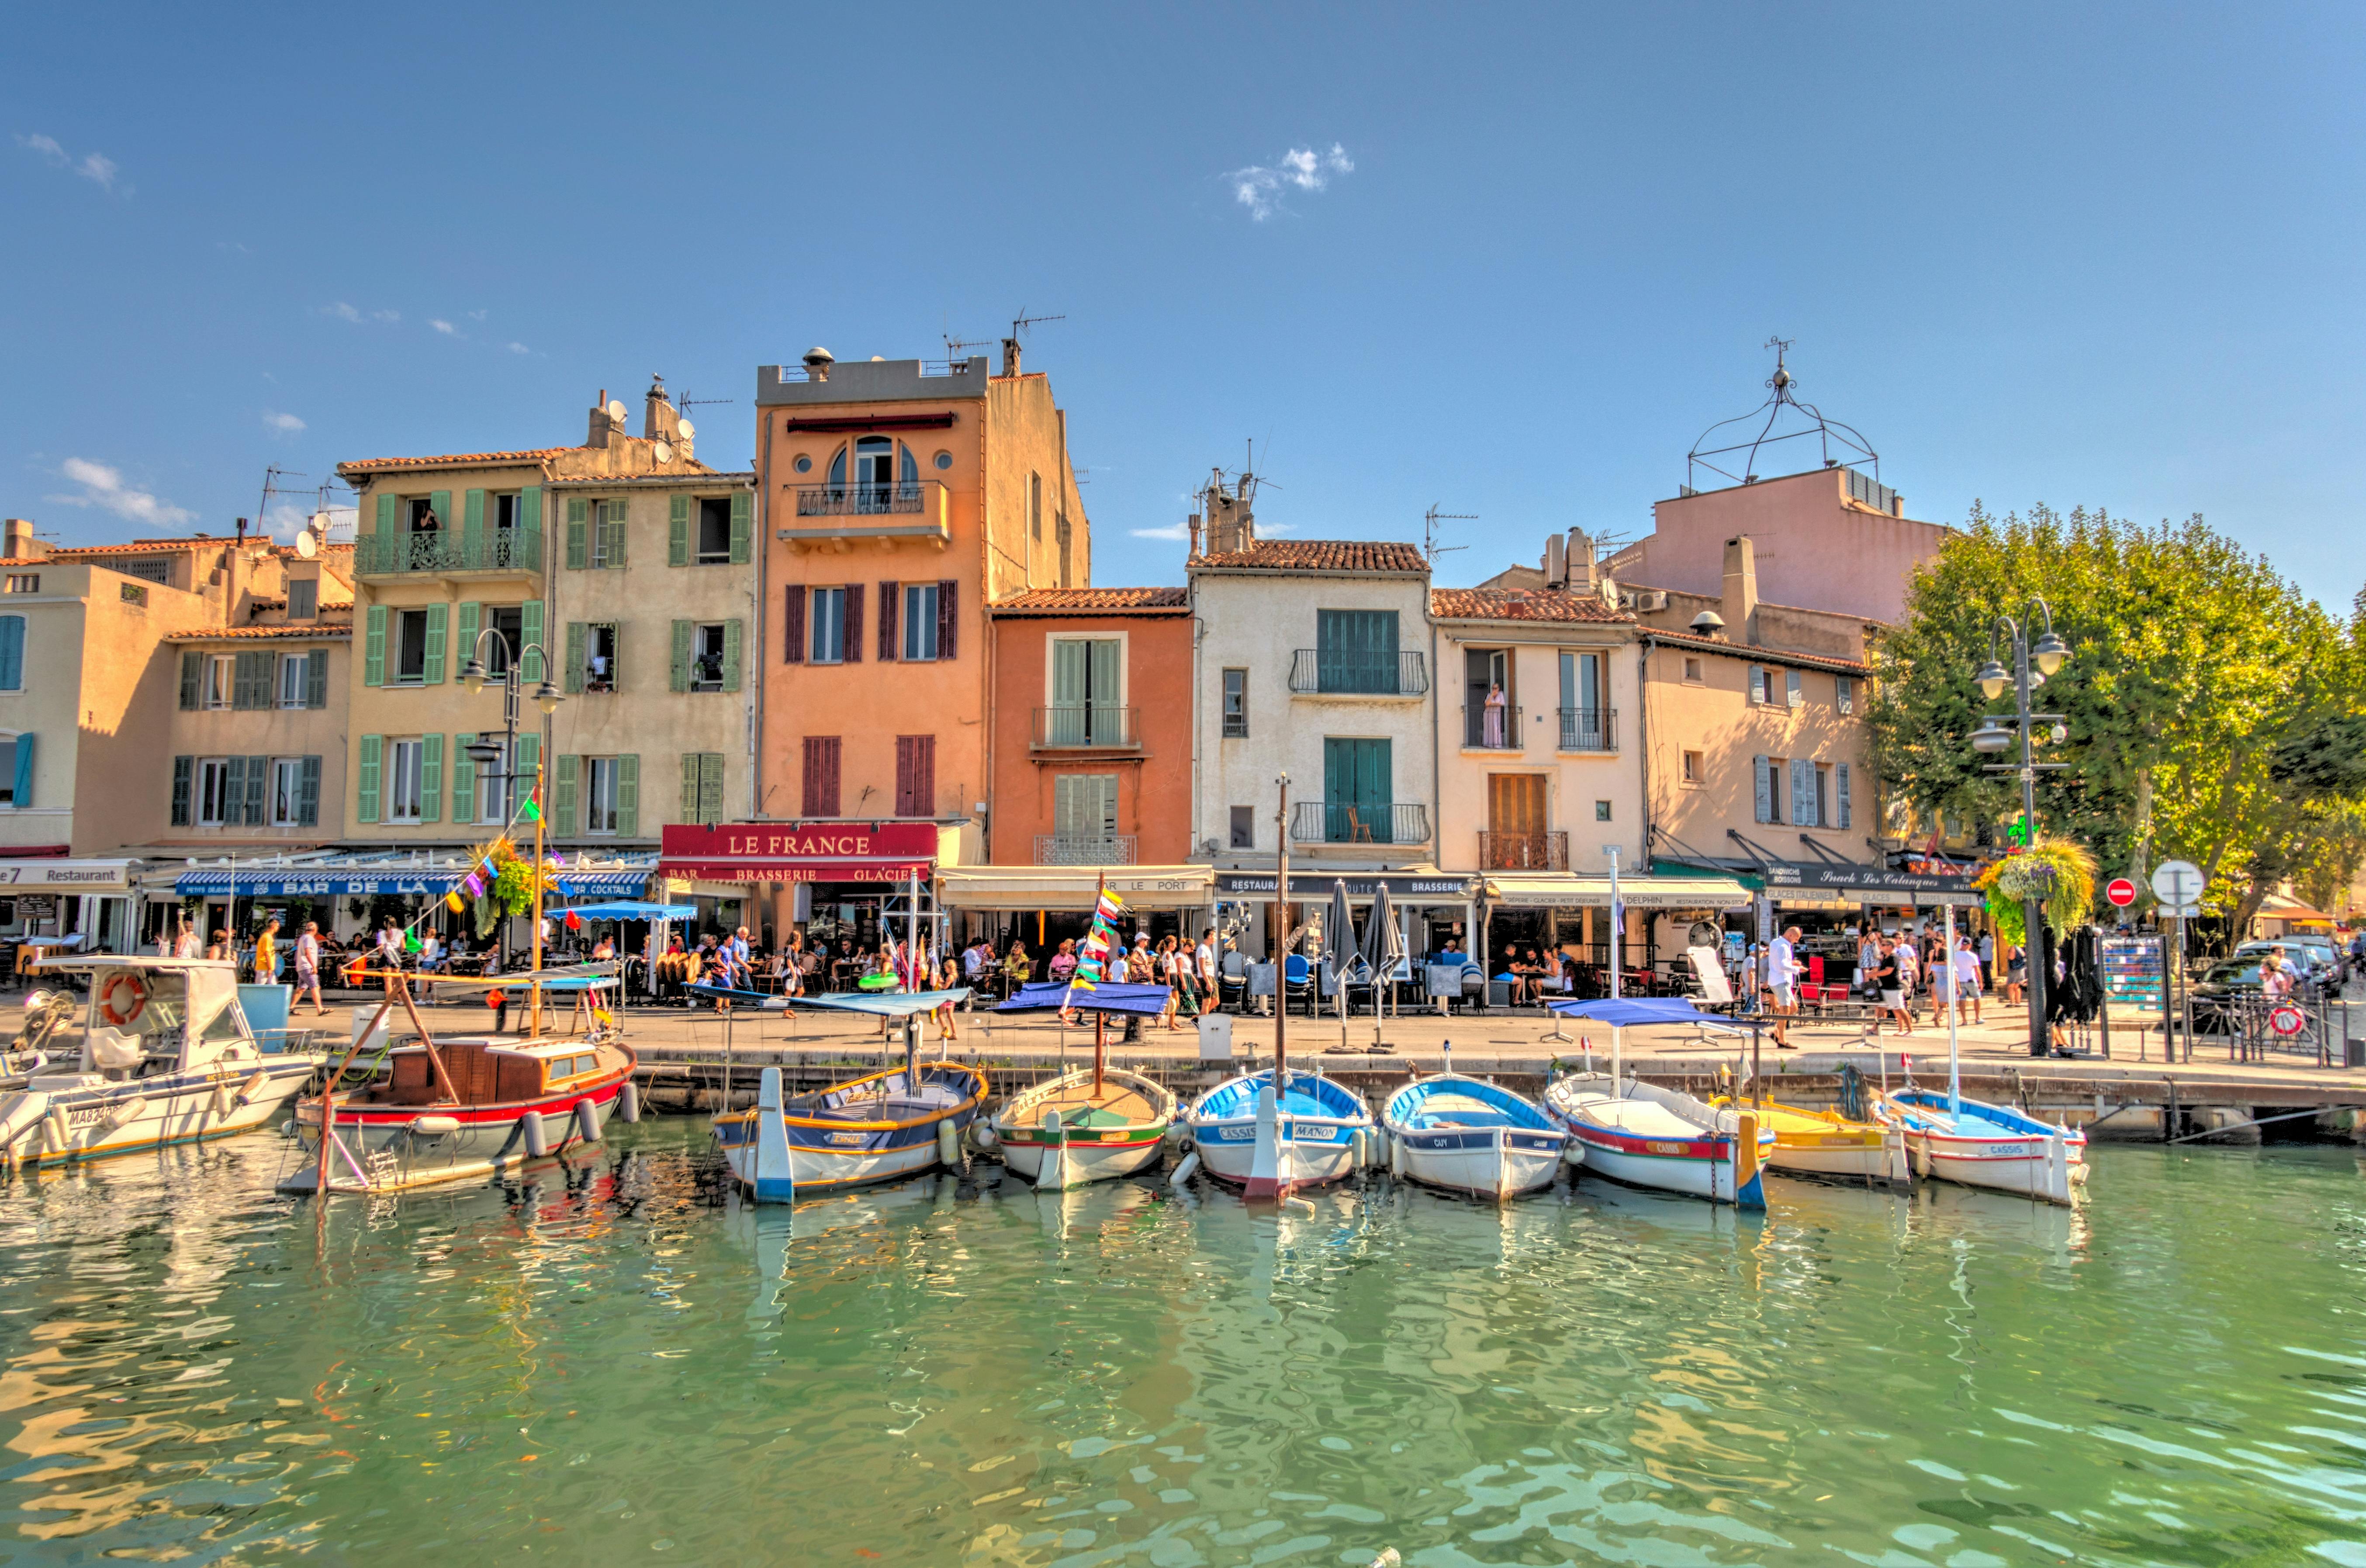 Visita guiada a Cassis, passeio de barco e degustação de vinhos de Aix-en-Provence